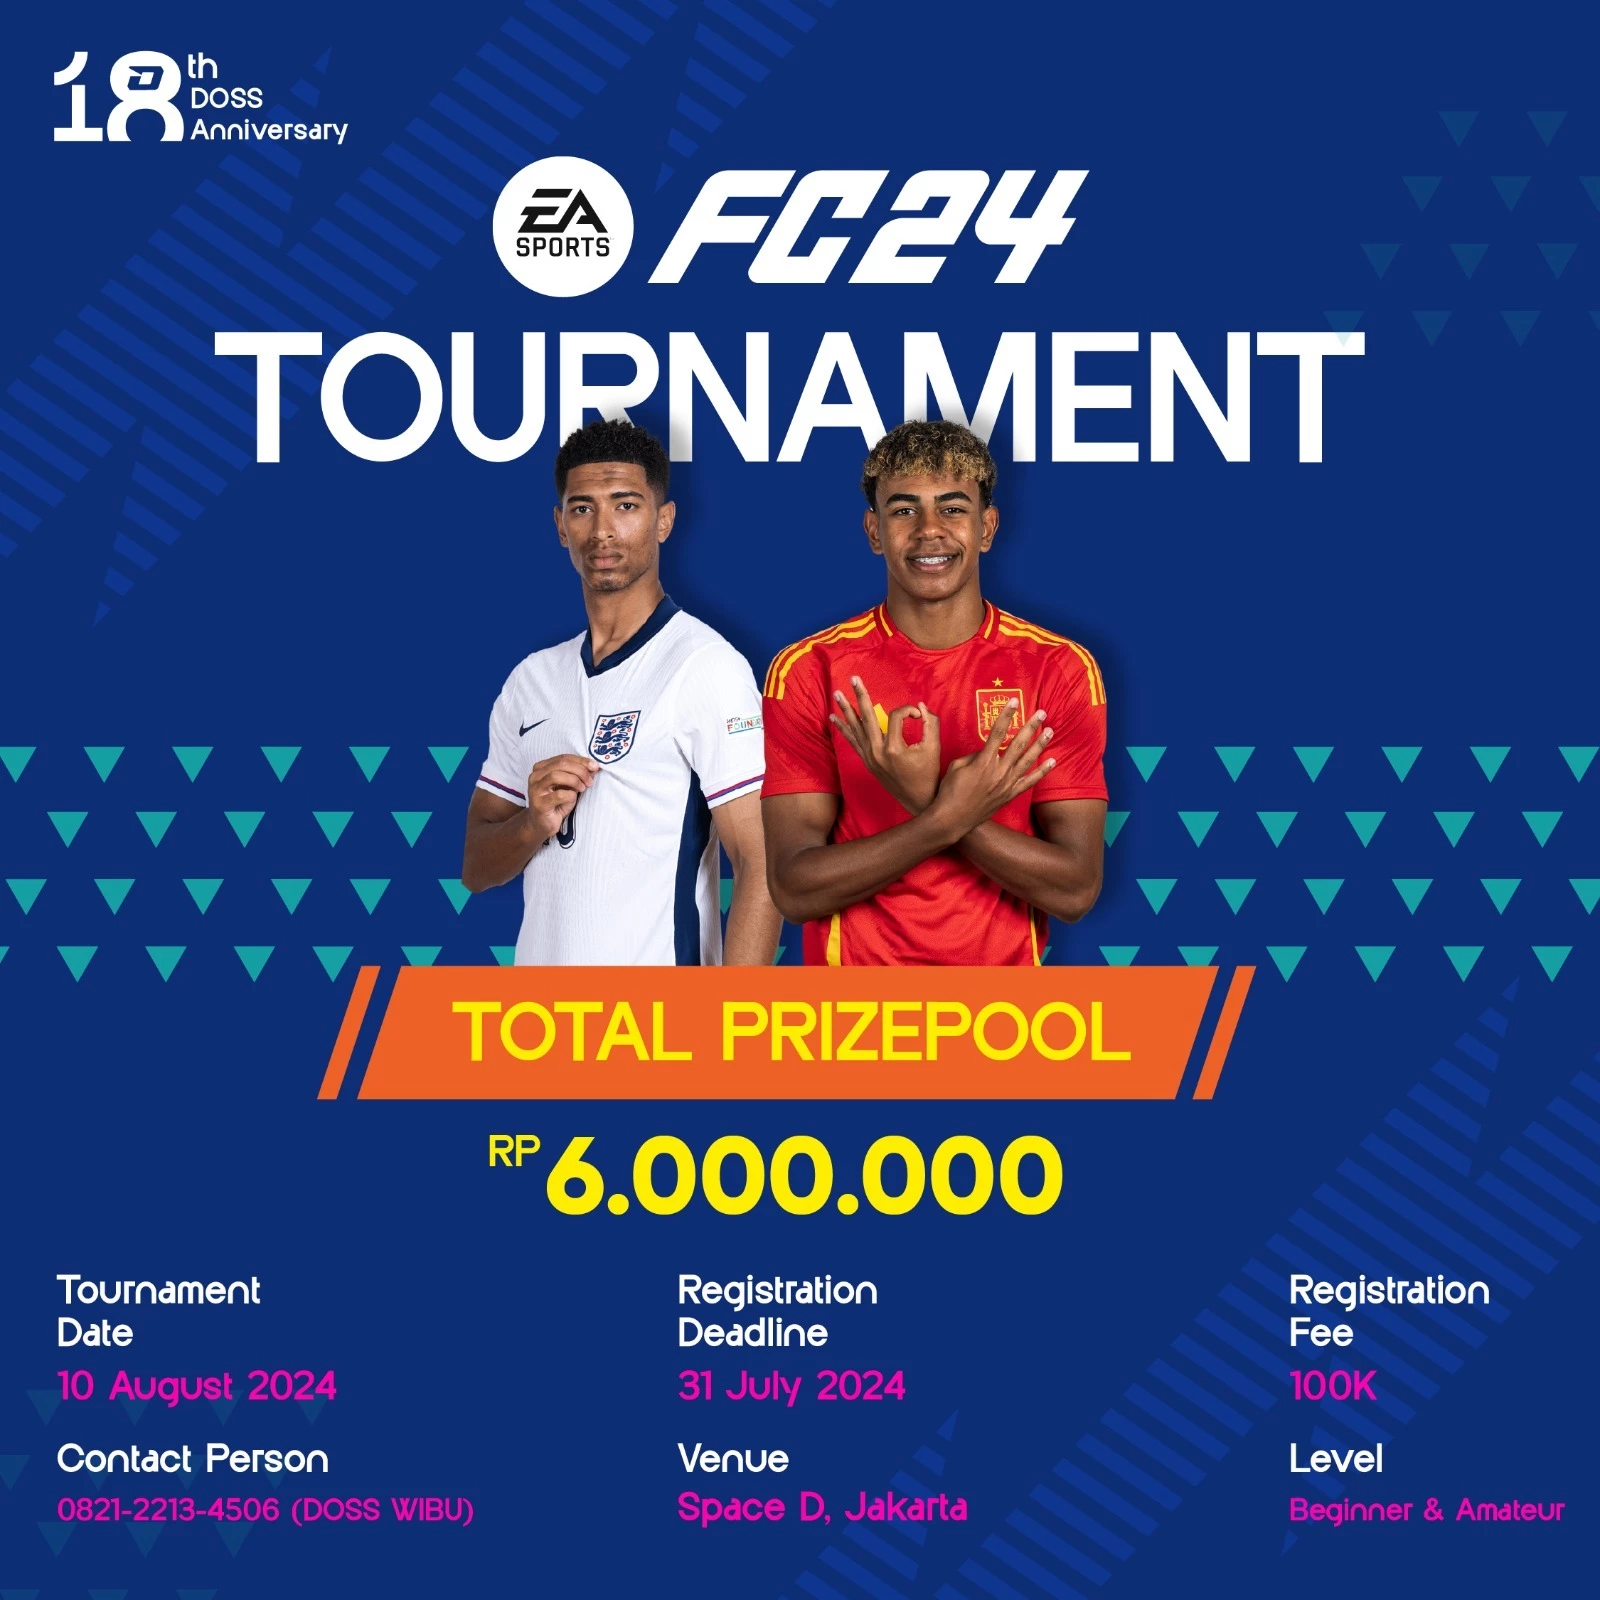 FC24 Tournament Special DOSS Anniversary ke 18